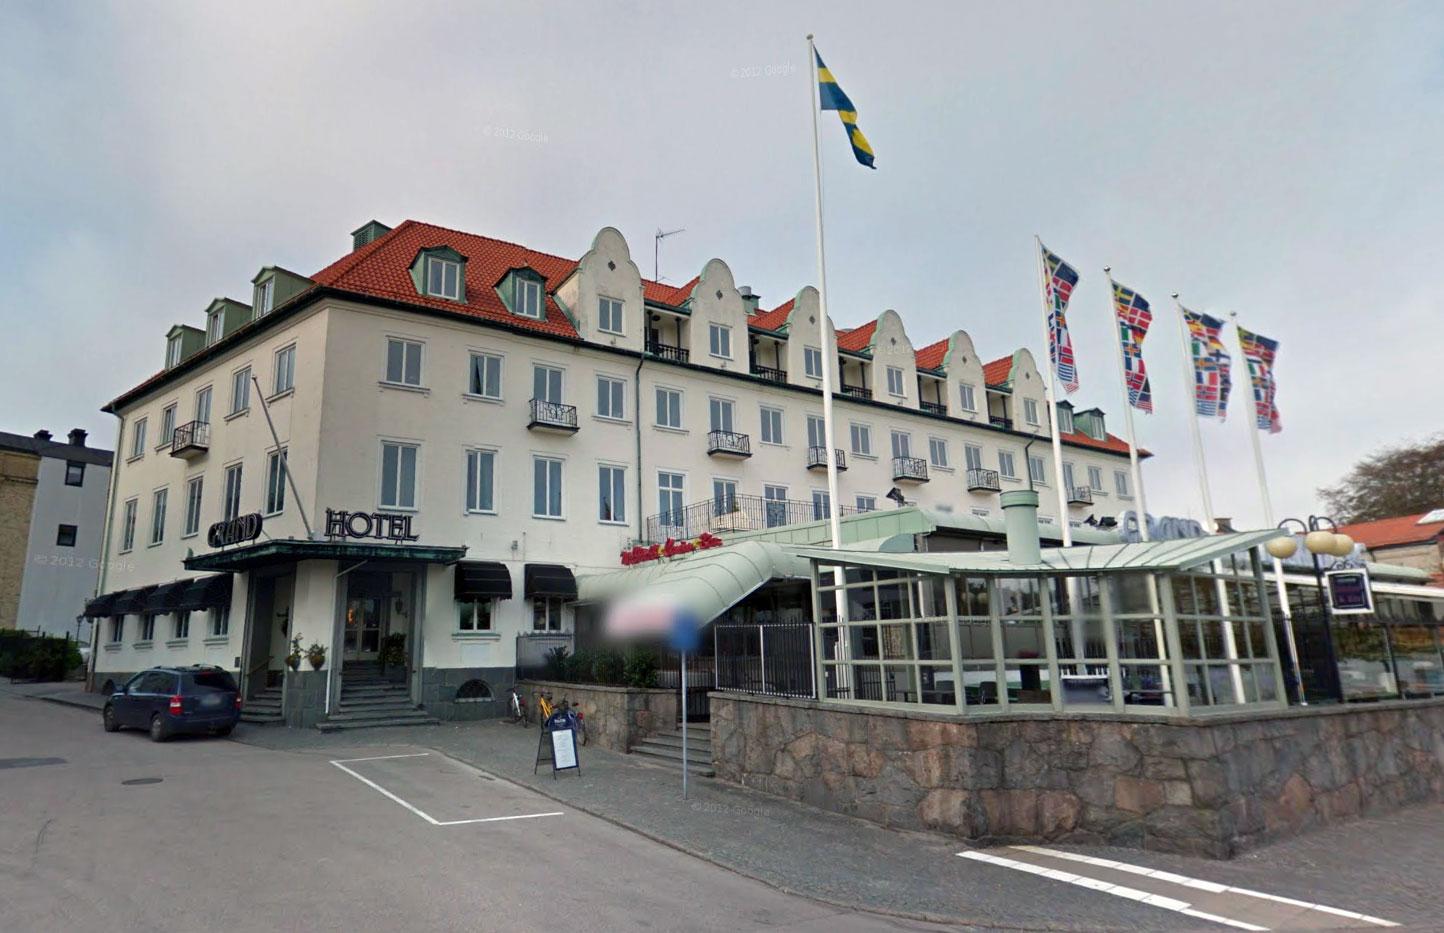 Grand Hotel i Falkenberg är ett av hotellen Patrick Reslow bott på.